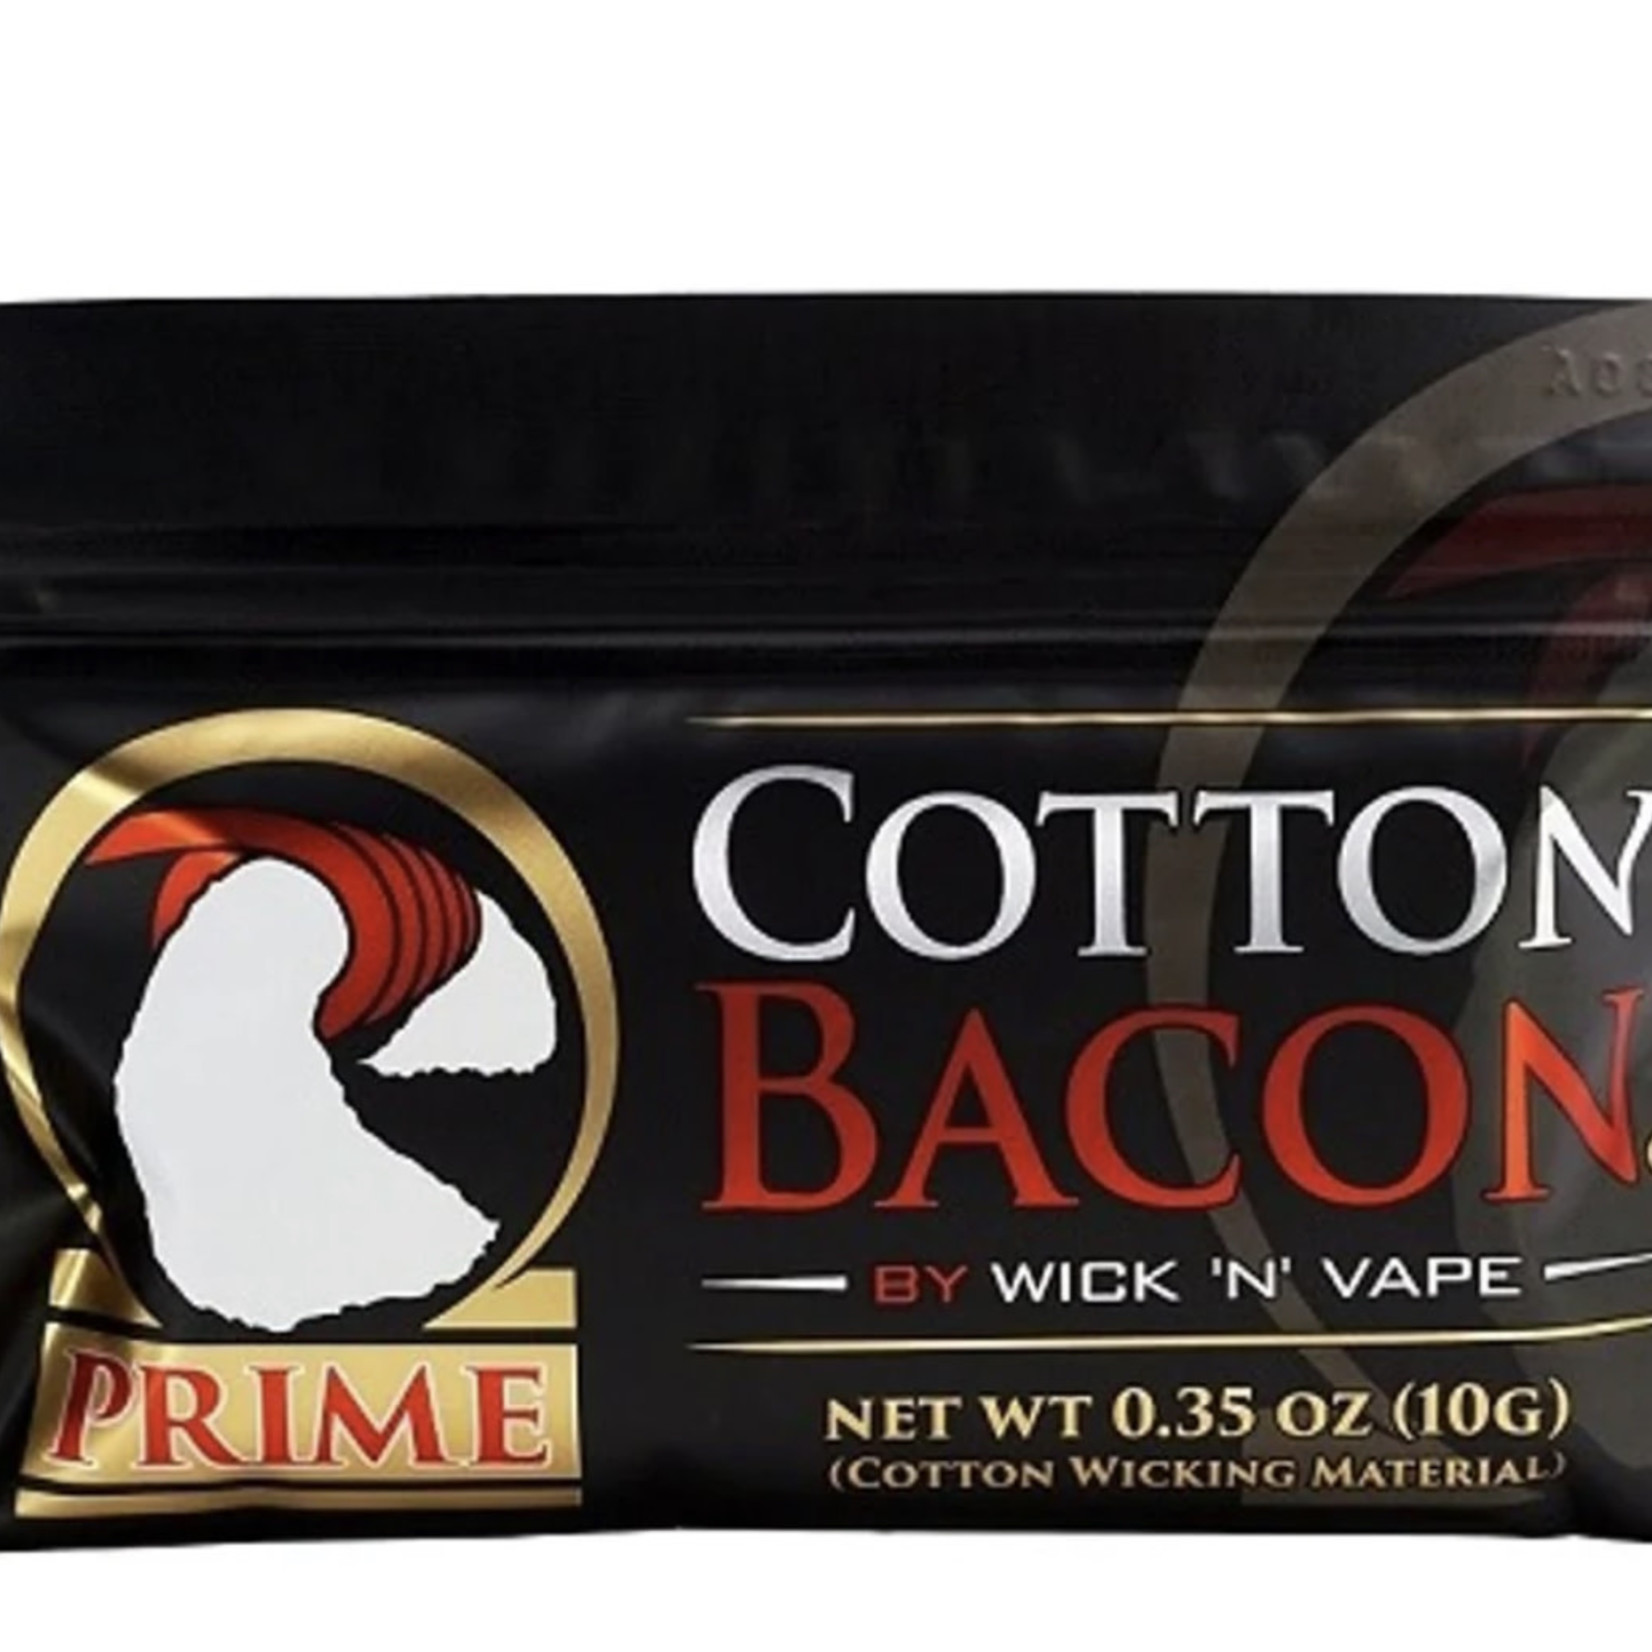 Wick 'N' Vape Cotton Bacon Prime 1/PK